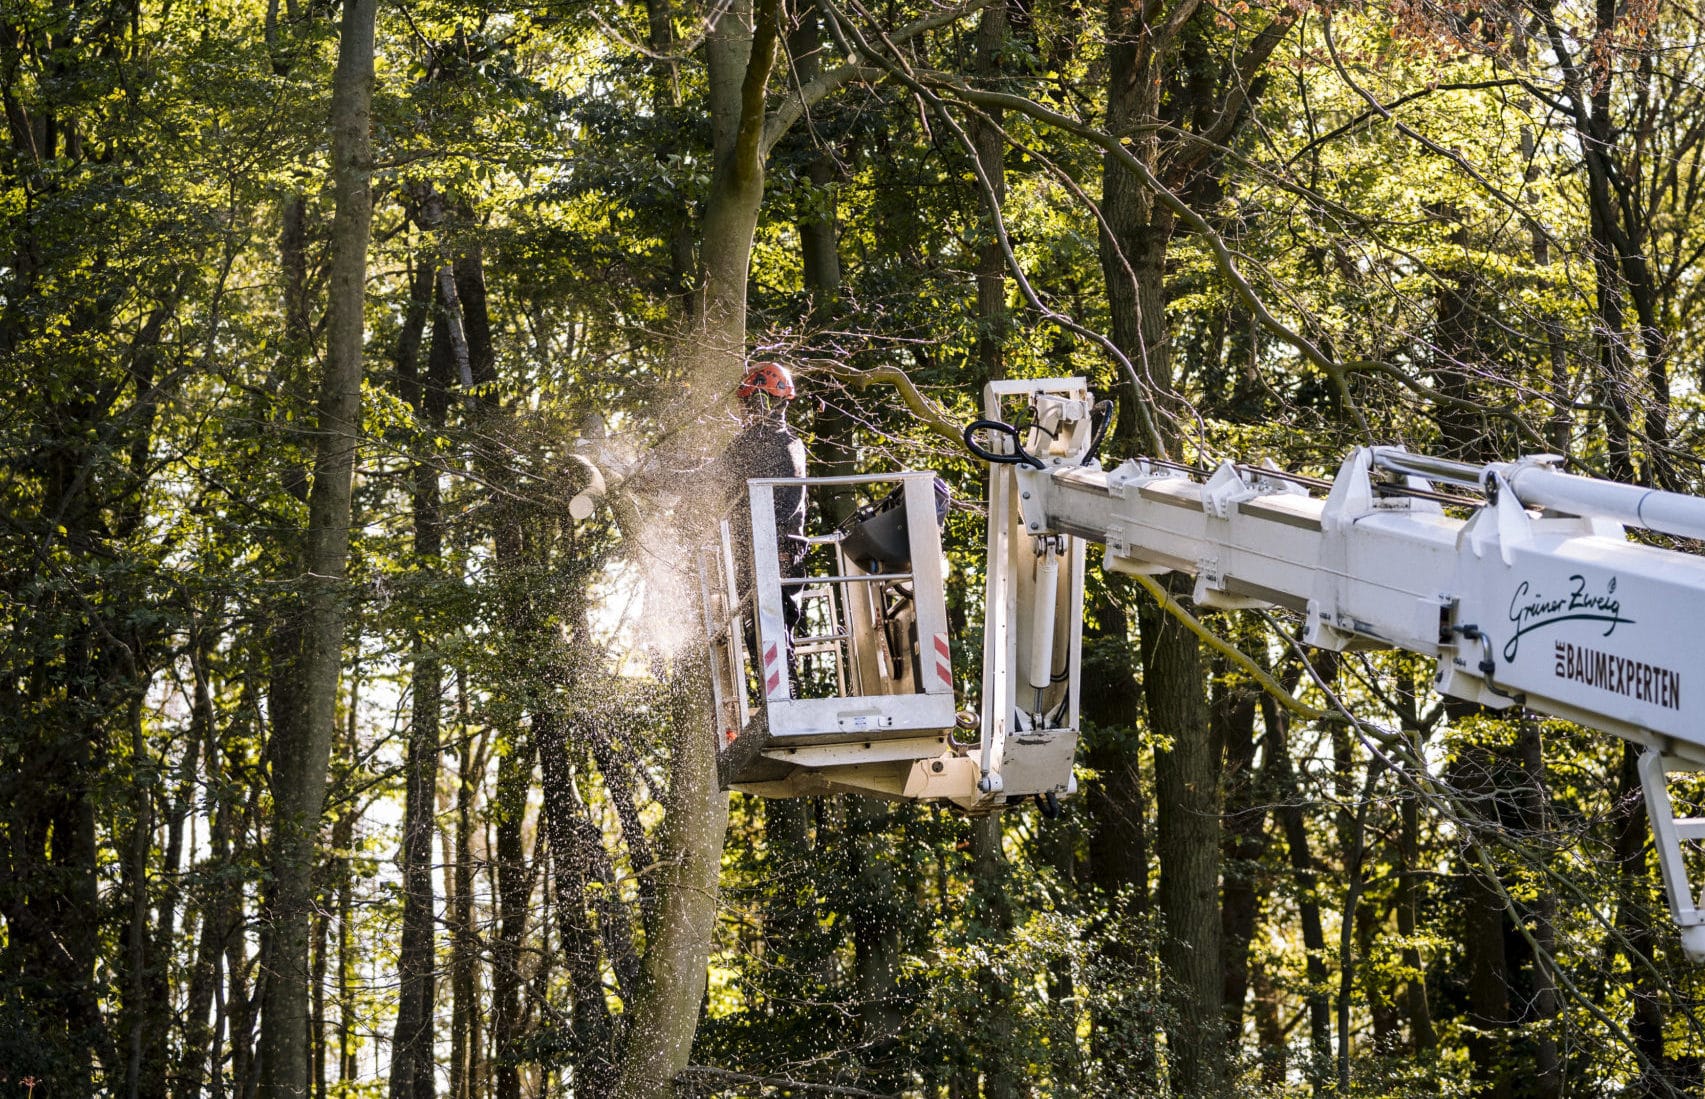 Mitarbeiter im Hubsteiger bei der Baumpflegearbeit.